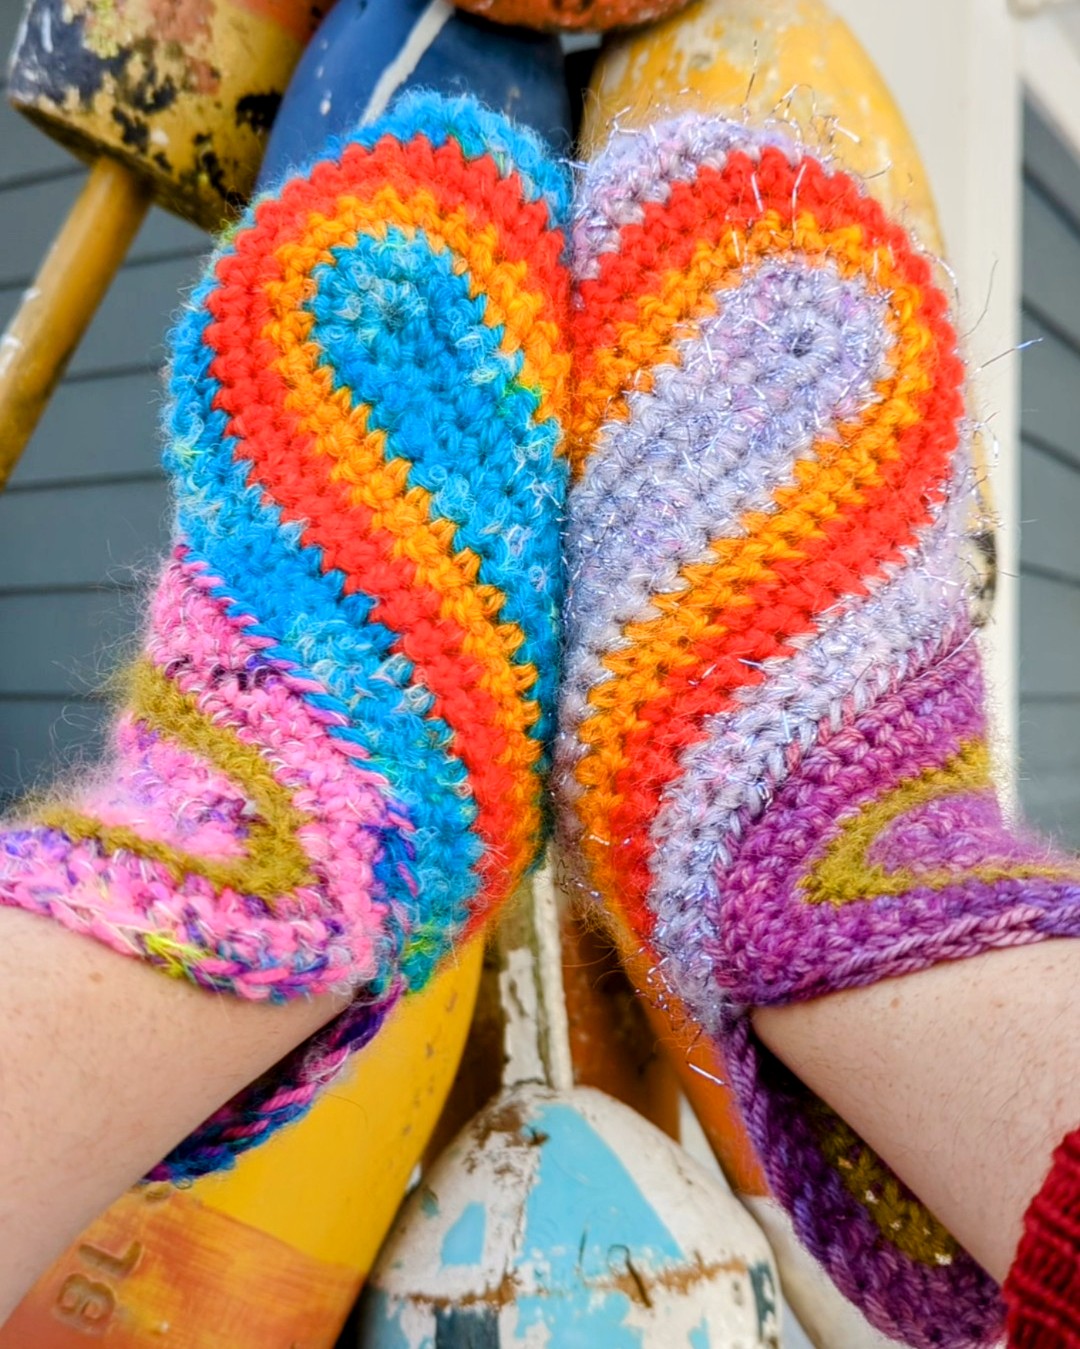 'Secret Admirer' Mittens Downloadable Crochet Pattern